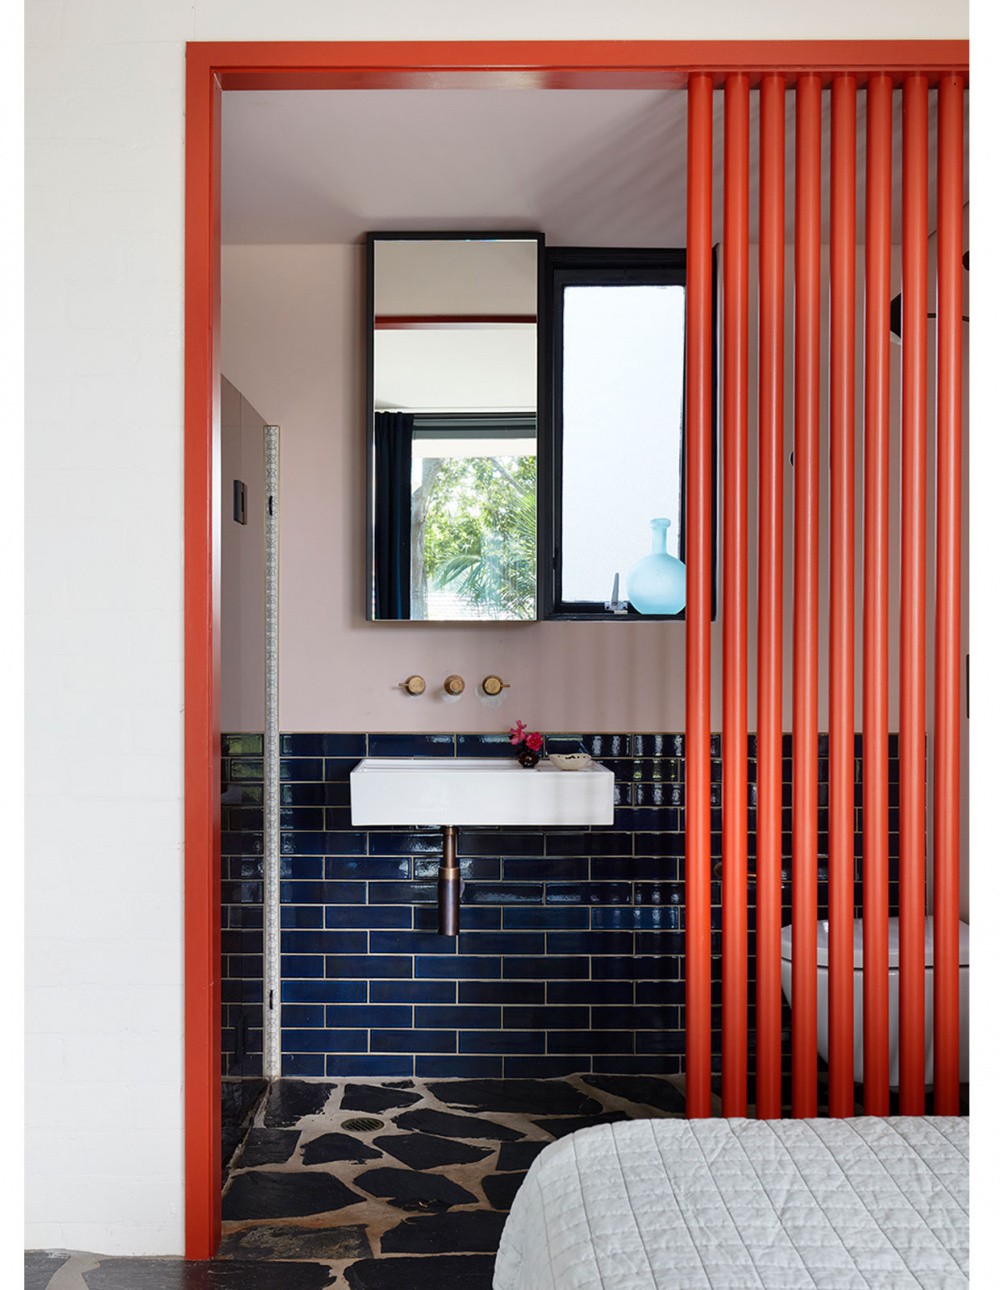 Décor do dia: banheiro pequeno com azulejo colorido e piso pavimentado (Foto: Divulgação)